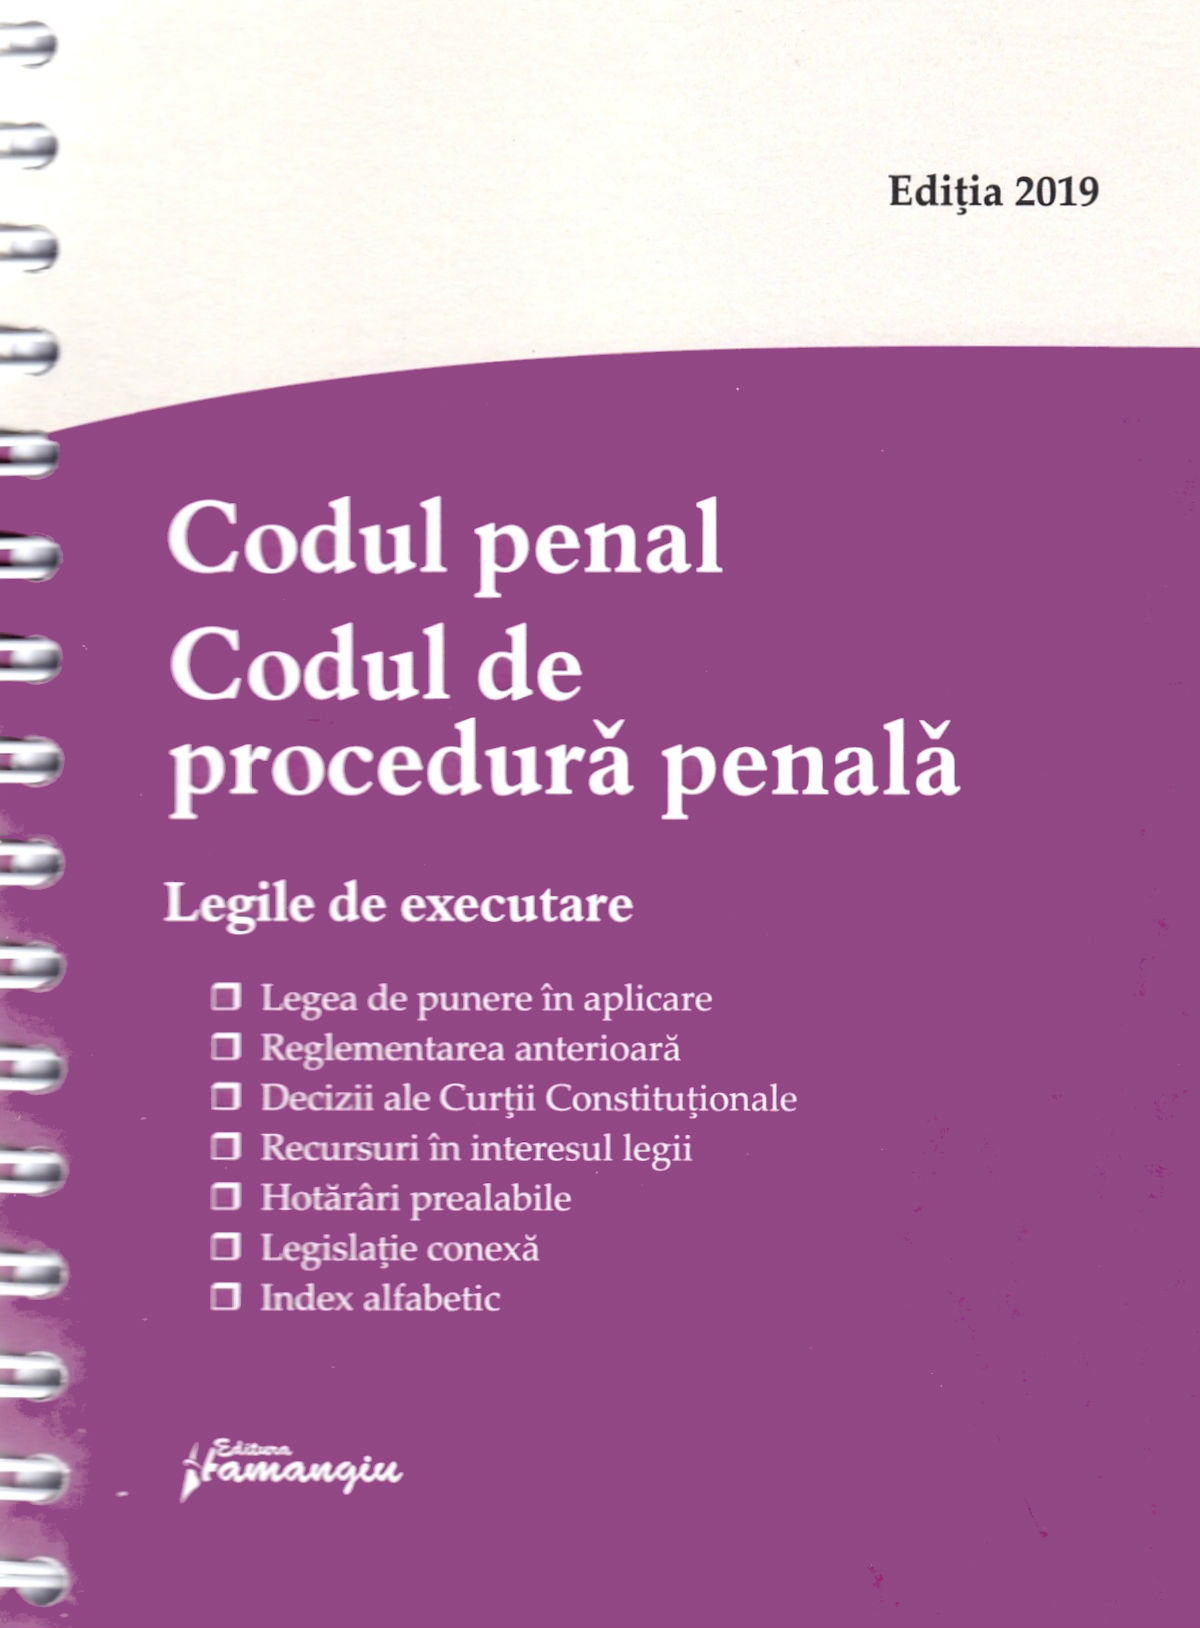 Codul penal. Codul de procedura penala. Legile de executare act. 14 iunie 2019